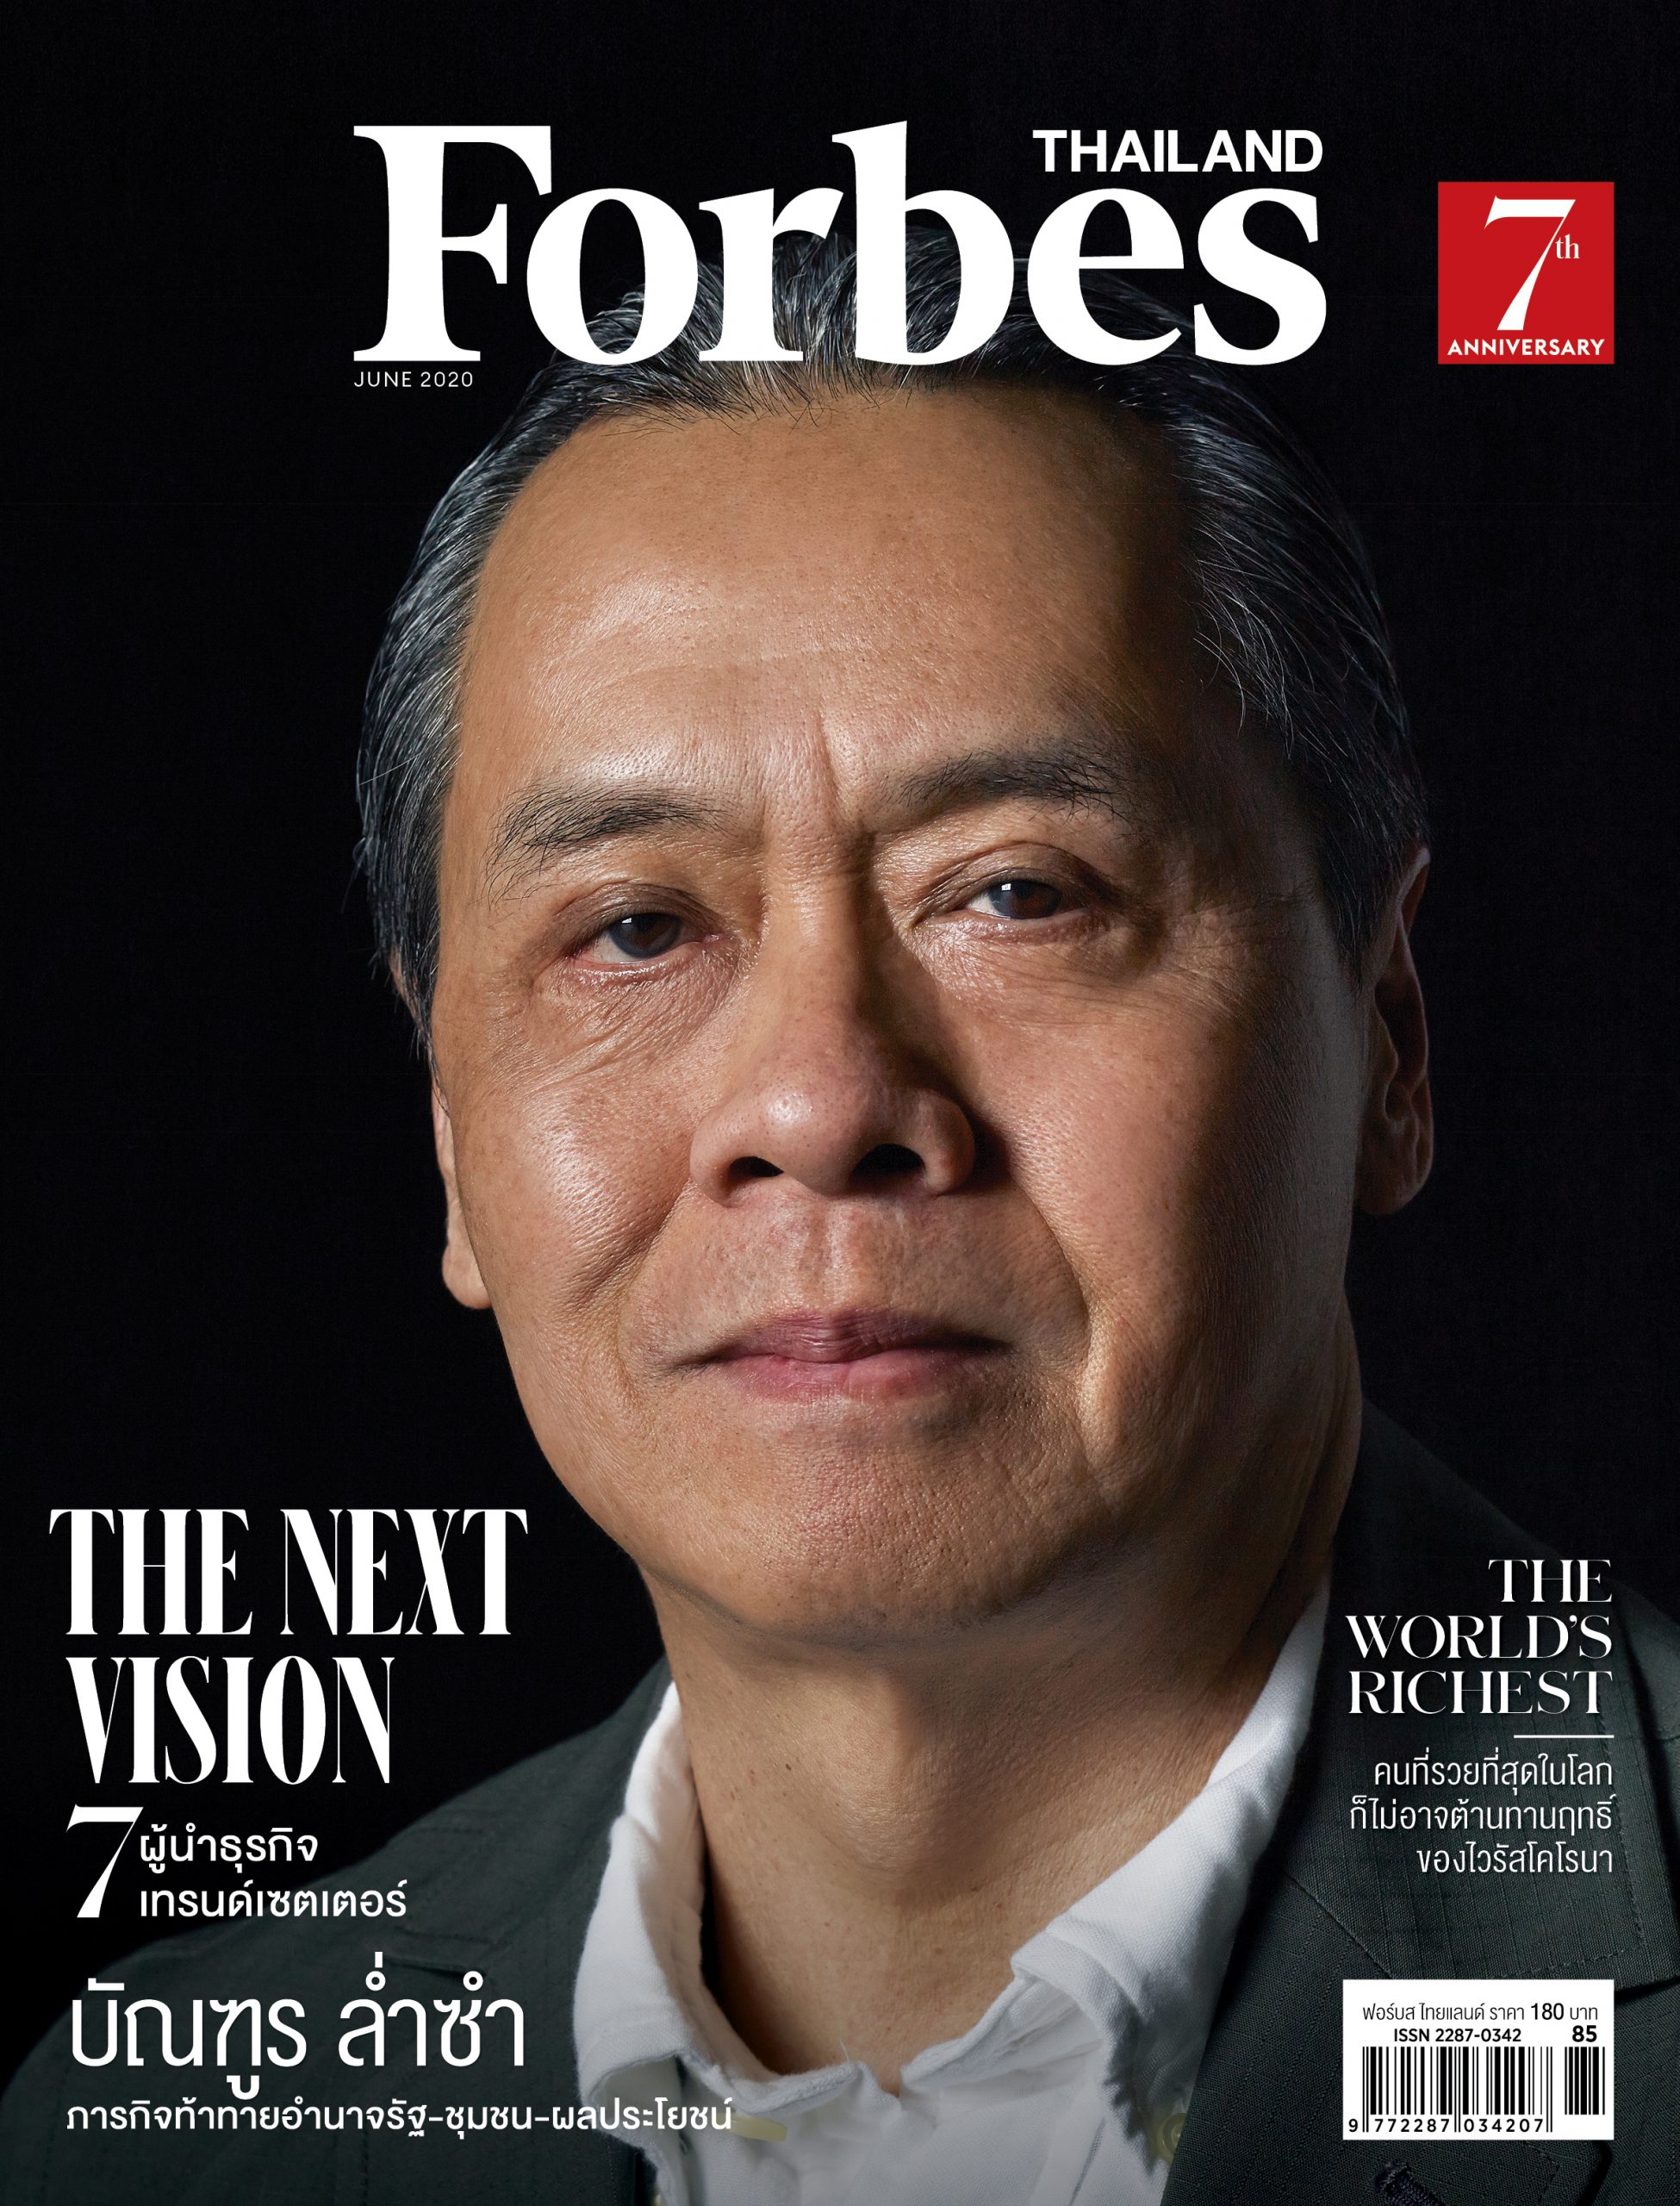 นิตยสาร Forbes Thailand ครบรอบ 7 ปี โฉมใหม่เนื้อหาเข้มข้นหลากหลาย คู่คิดนักธุรกิจไทย